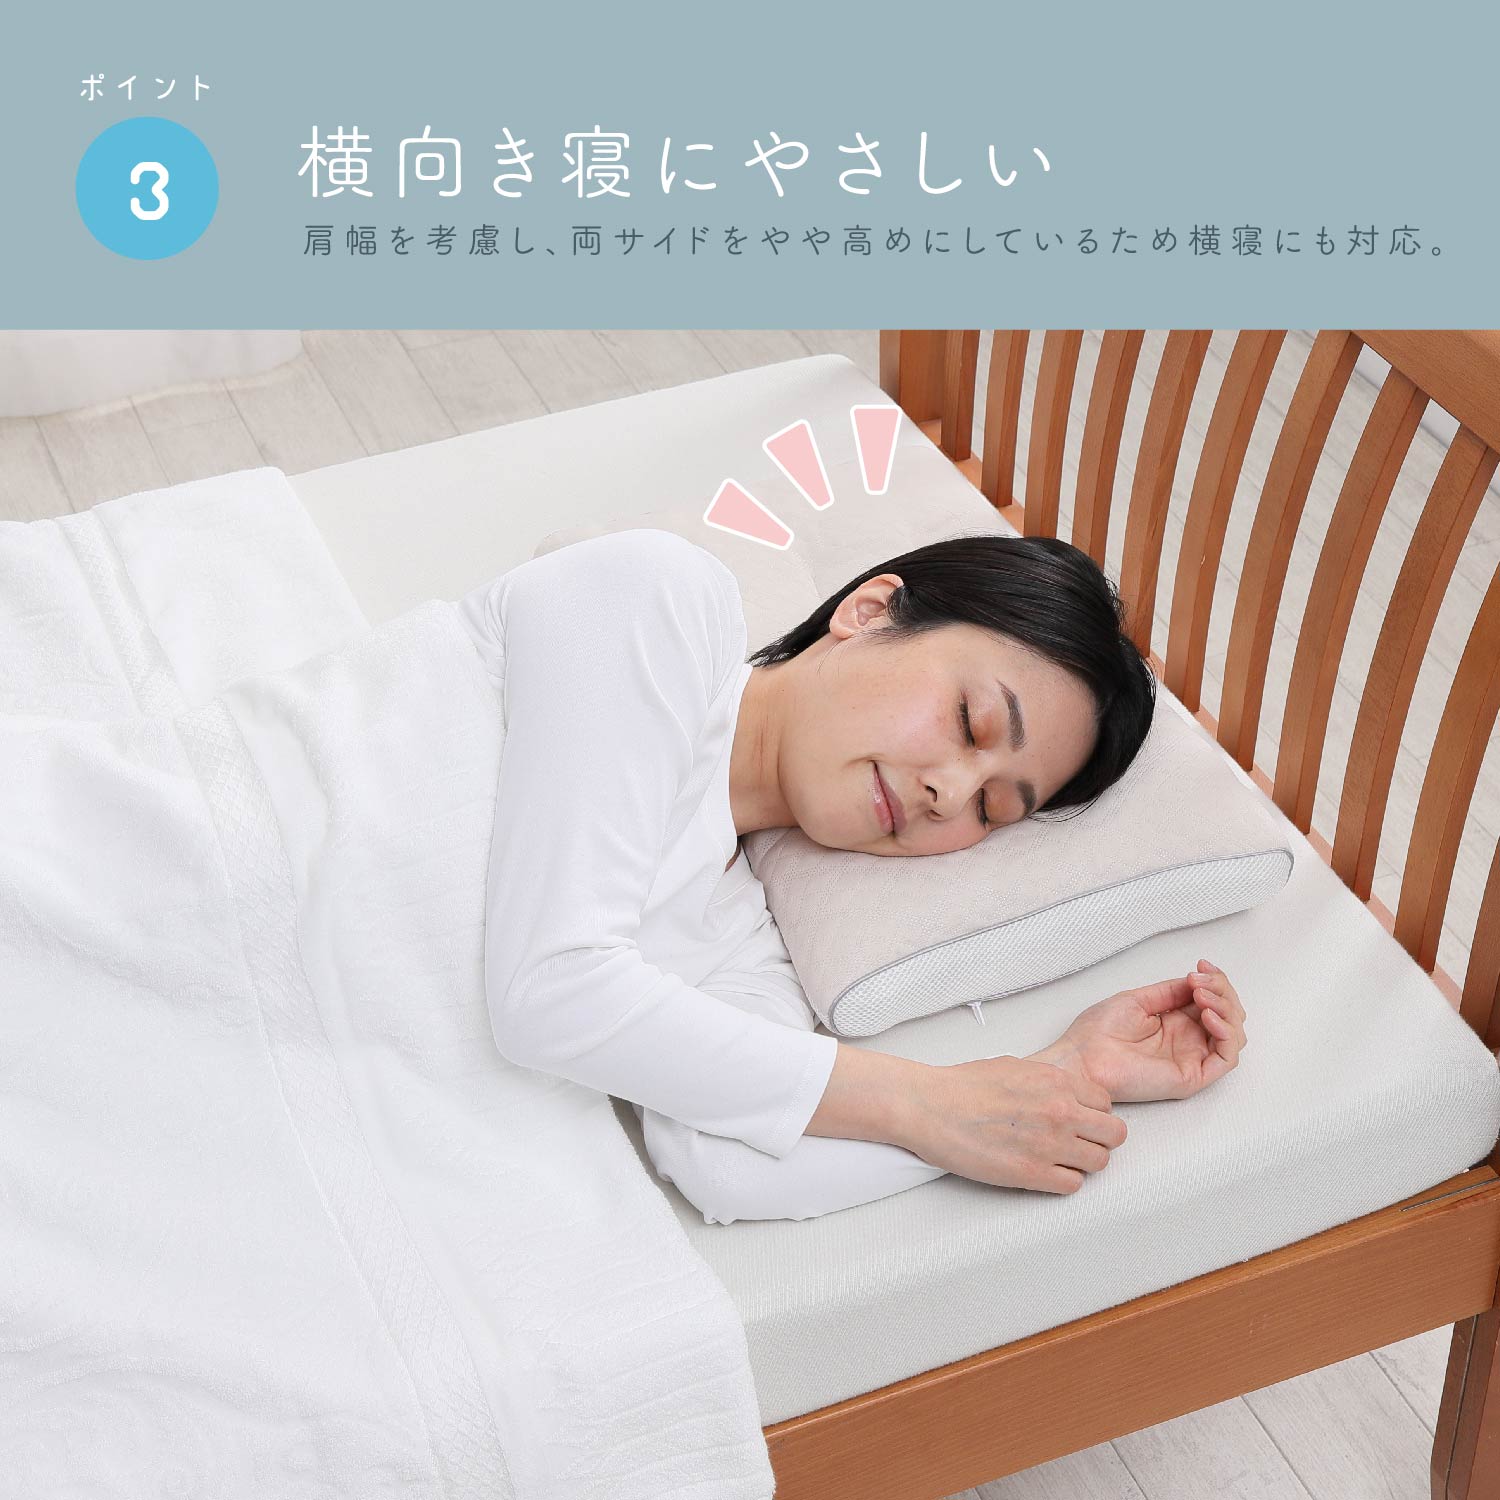 西川 (Nishikawa) 睡眠博士 首肩フィット 枕 高め 医学博士と共同開発